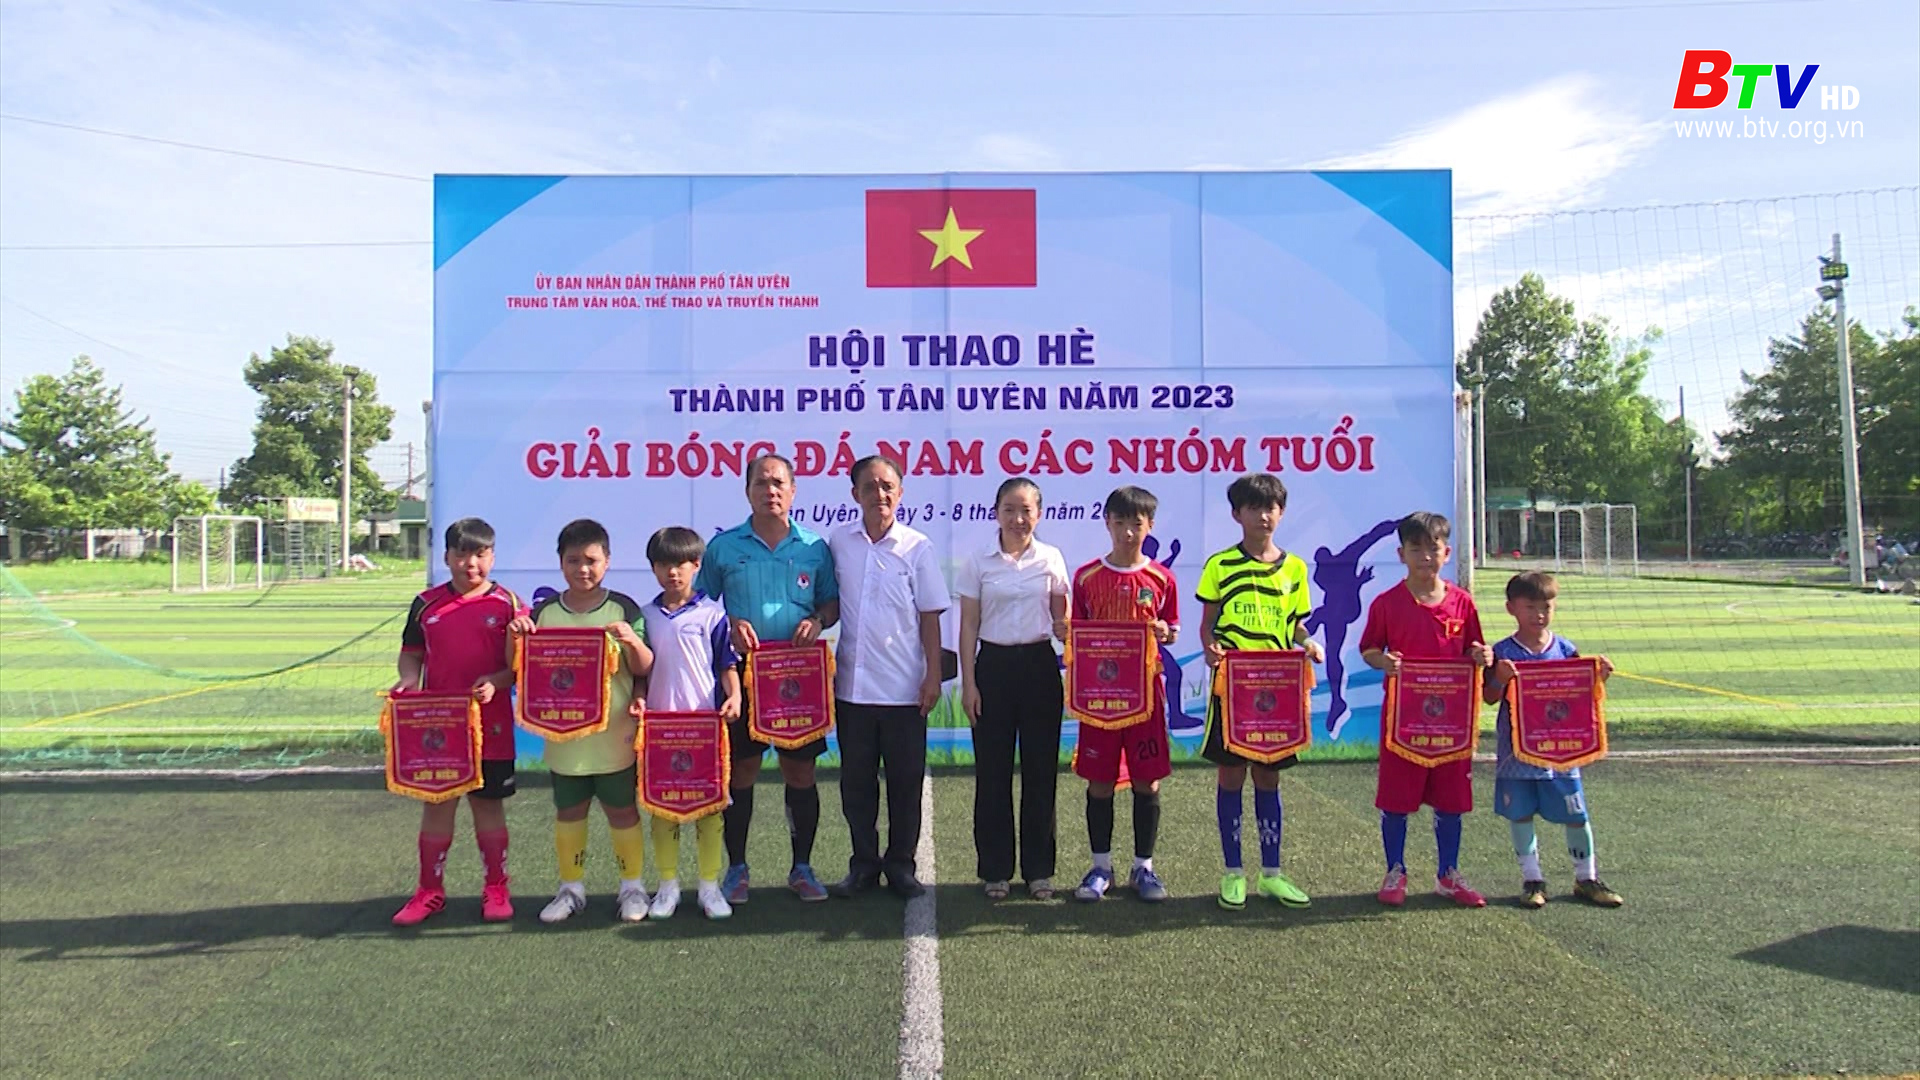 Thành phố Tân Uyên: Tổ chức giải bóng đá nhi đồng 2023